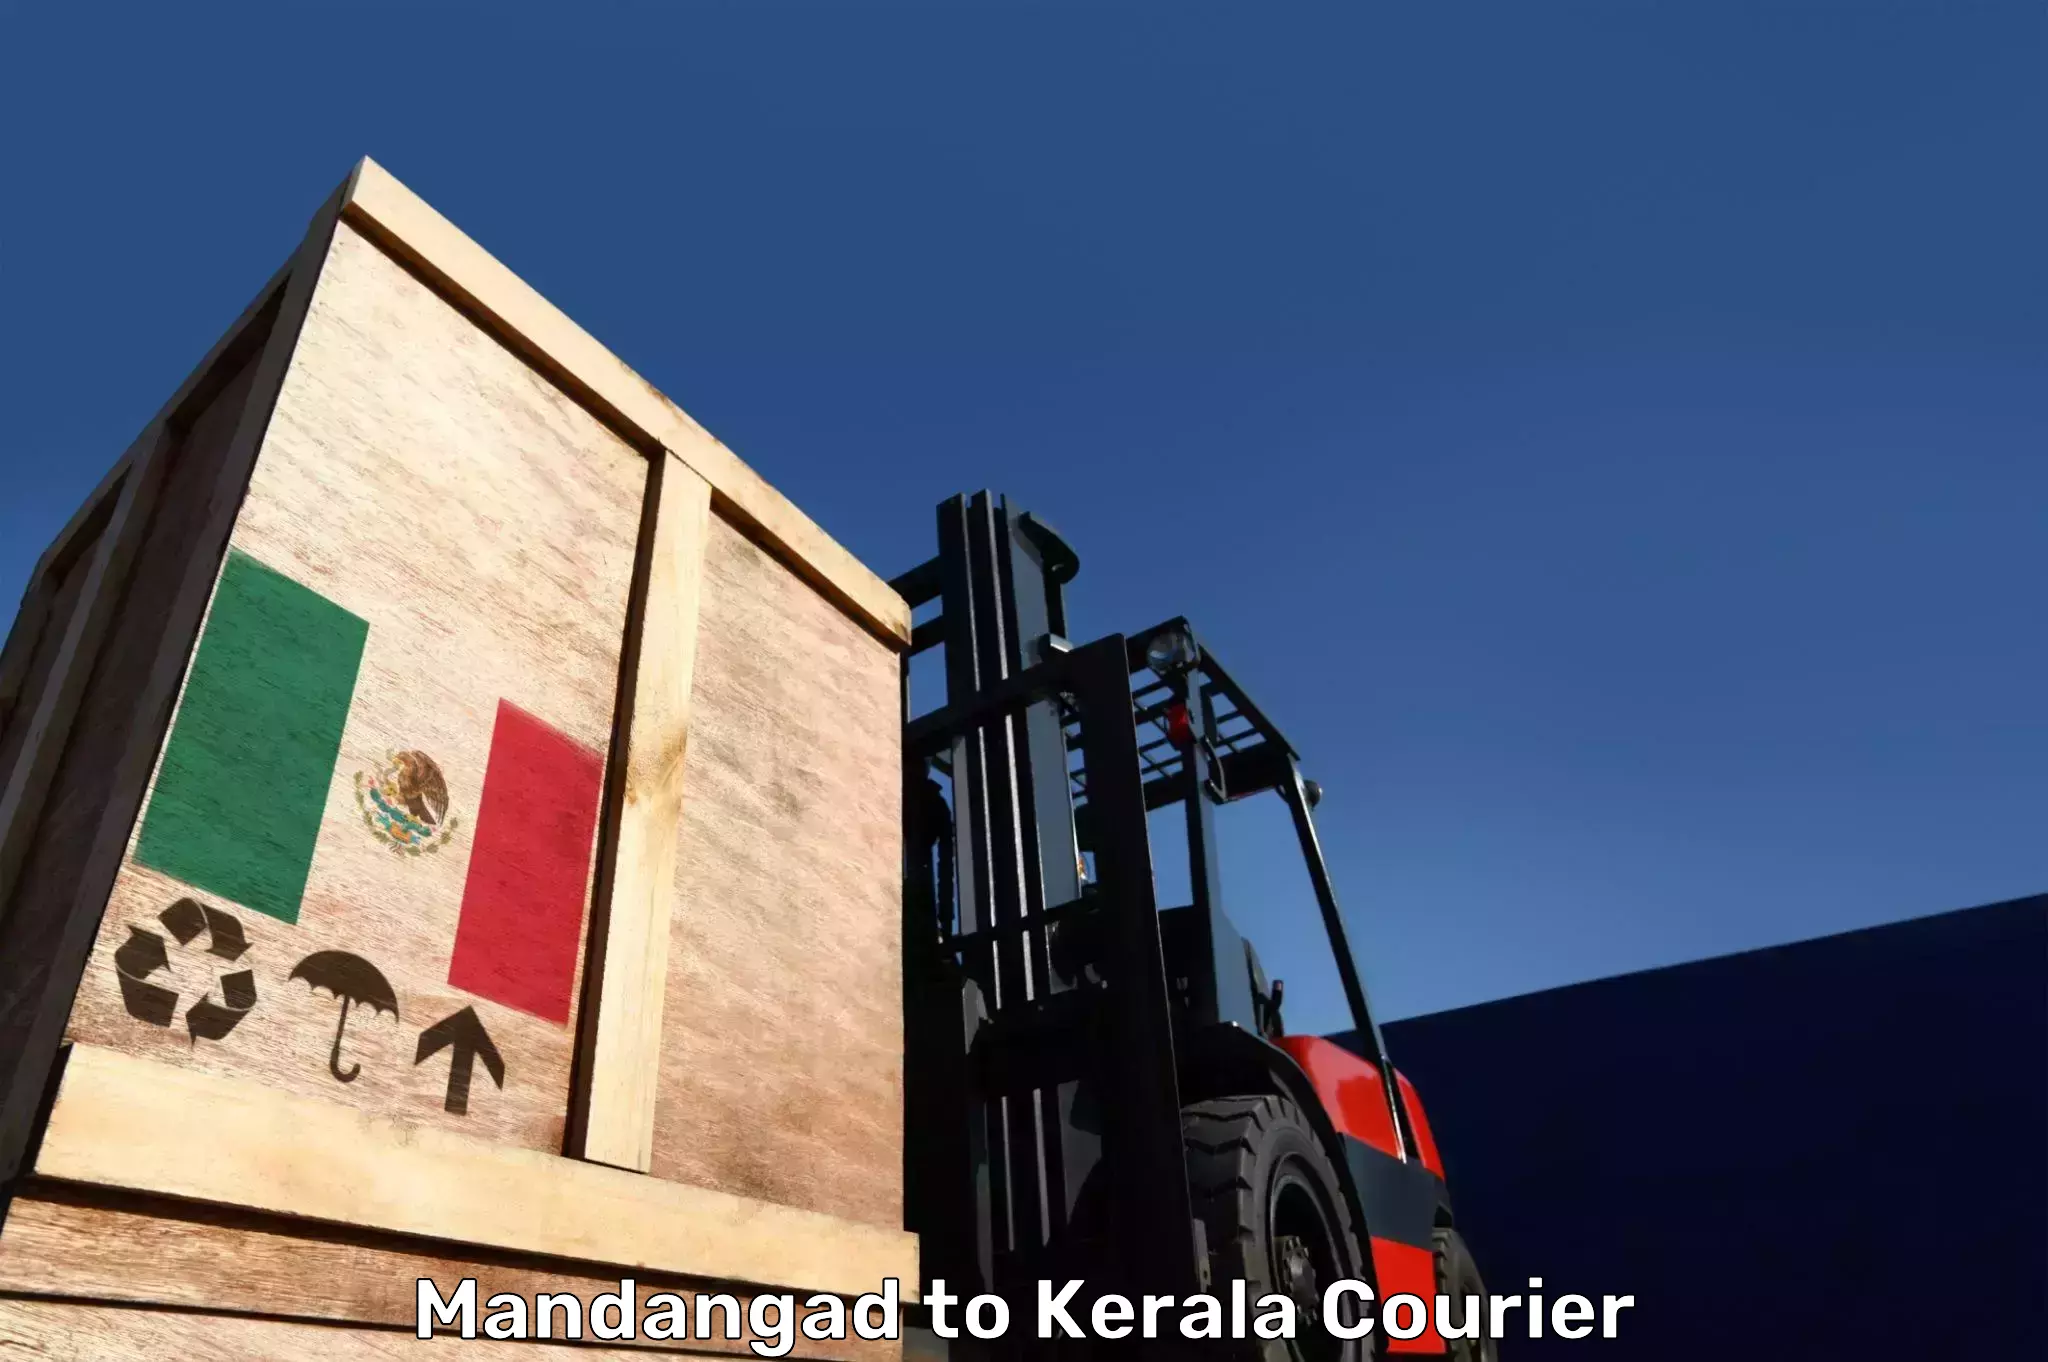 Baggage transport scheduler Mandangad to Kerala